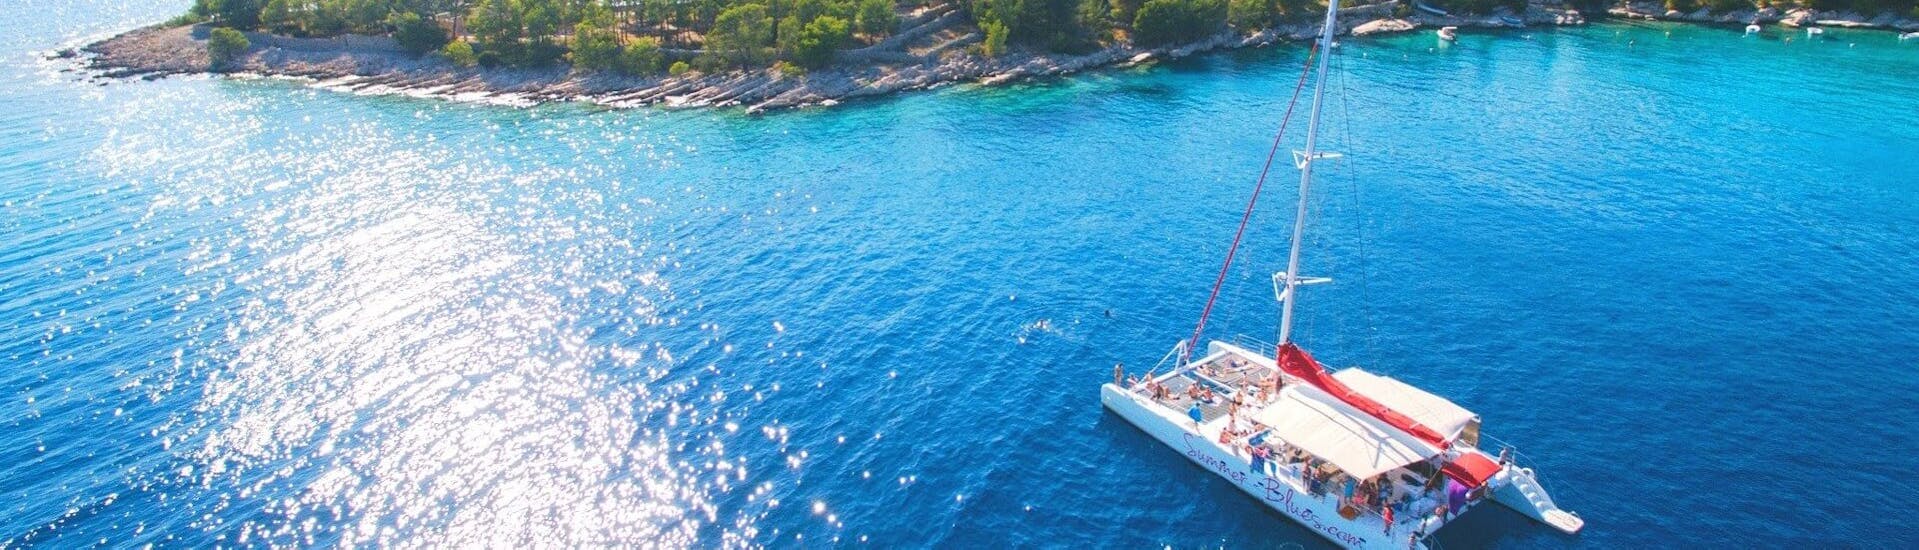 Paseo en catamarán de Split a Krka National Park con baño en el mar & visita guiada.